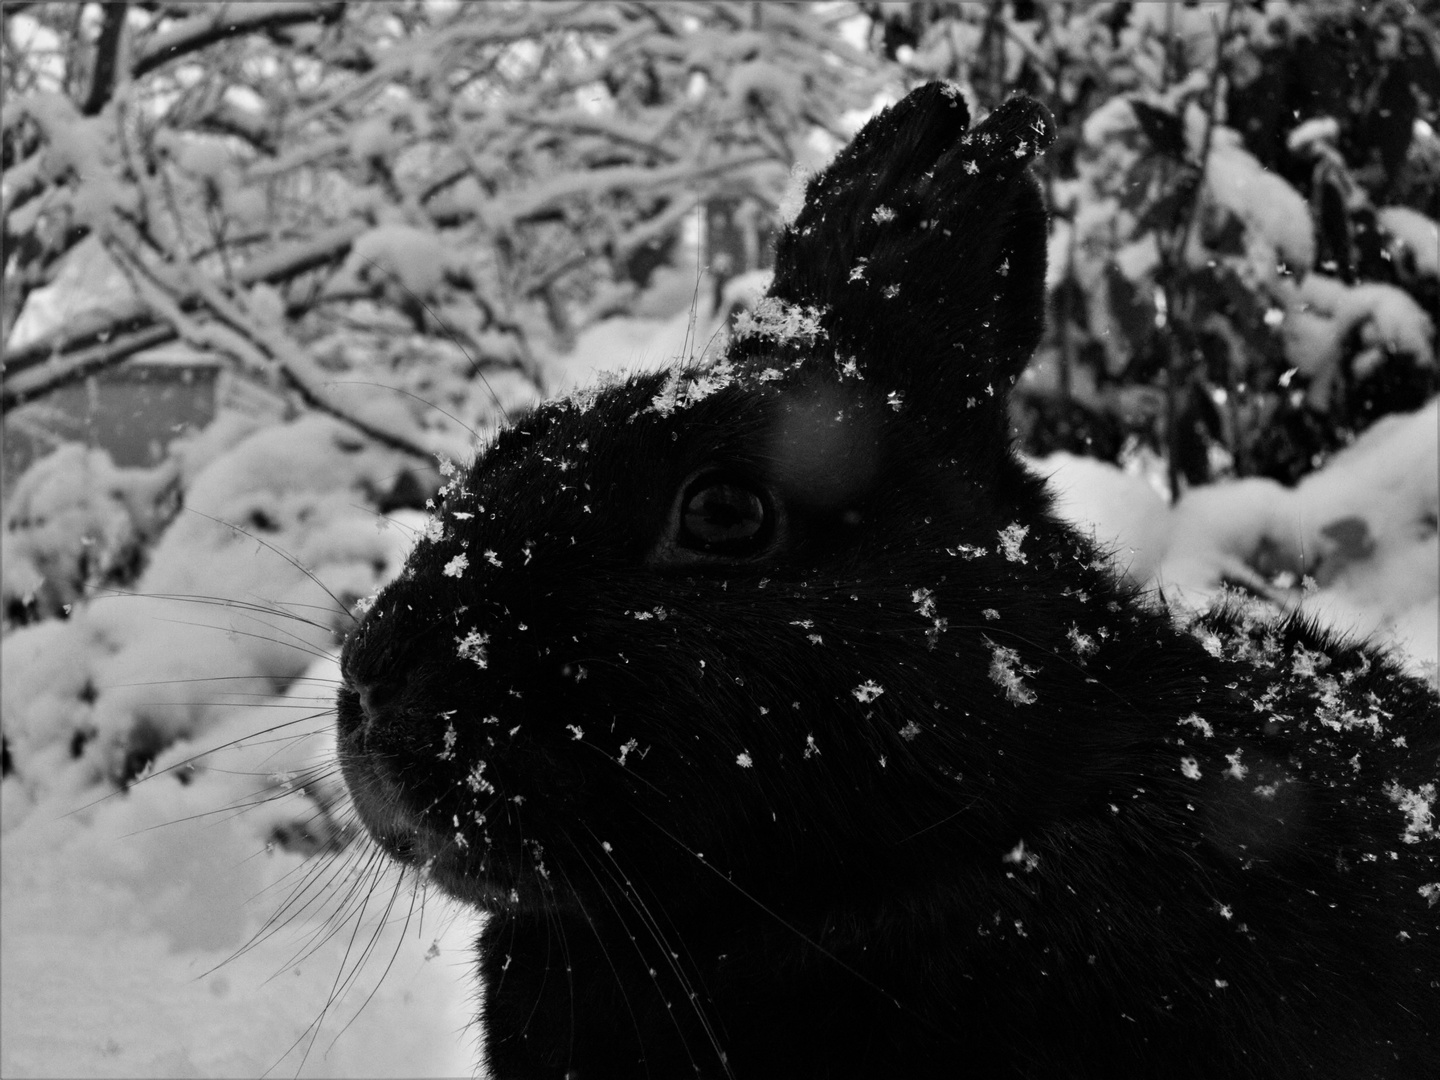 Schwarzer Hase im Schnee